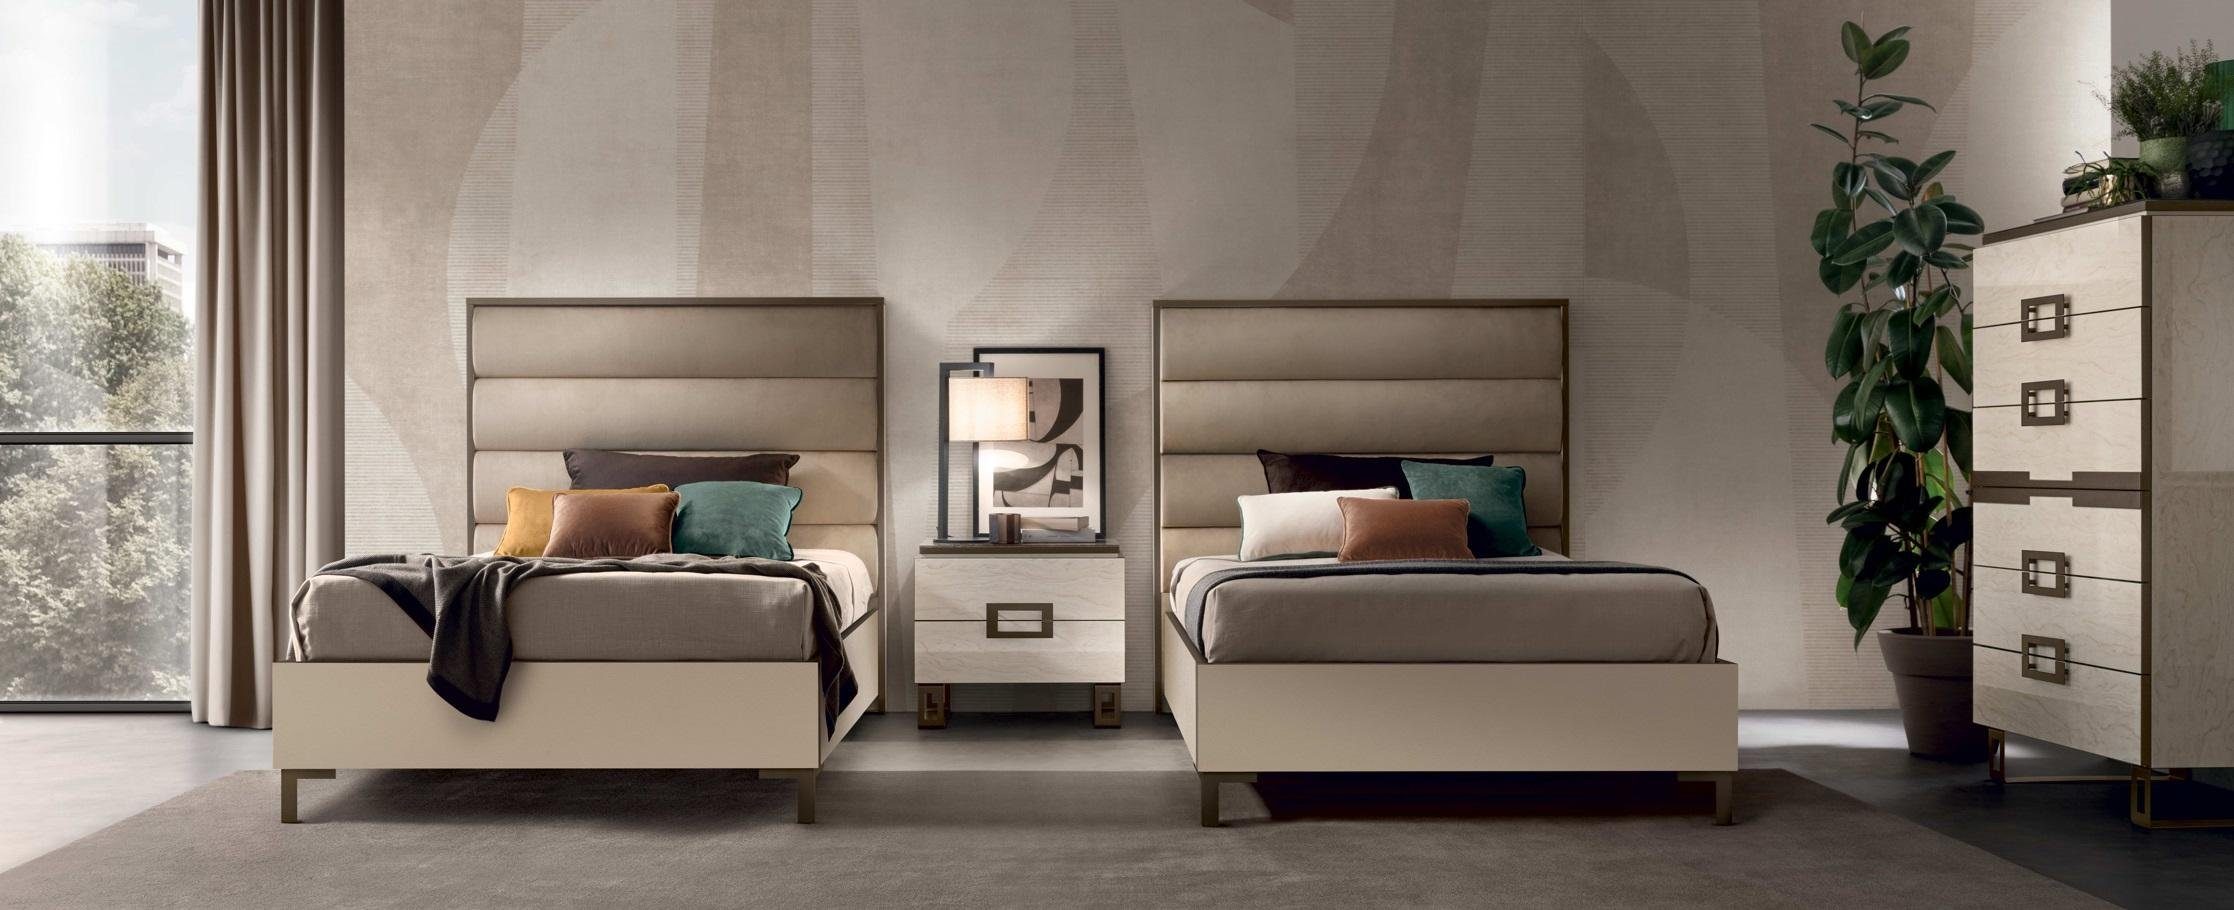 JVmoebel Schlafzimmer-Set Hotel Einrichtung 2x Moderne Luxus Nachttisch Betten Design 3tlg. 